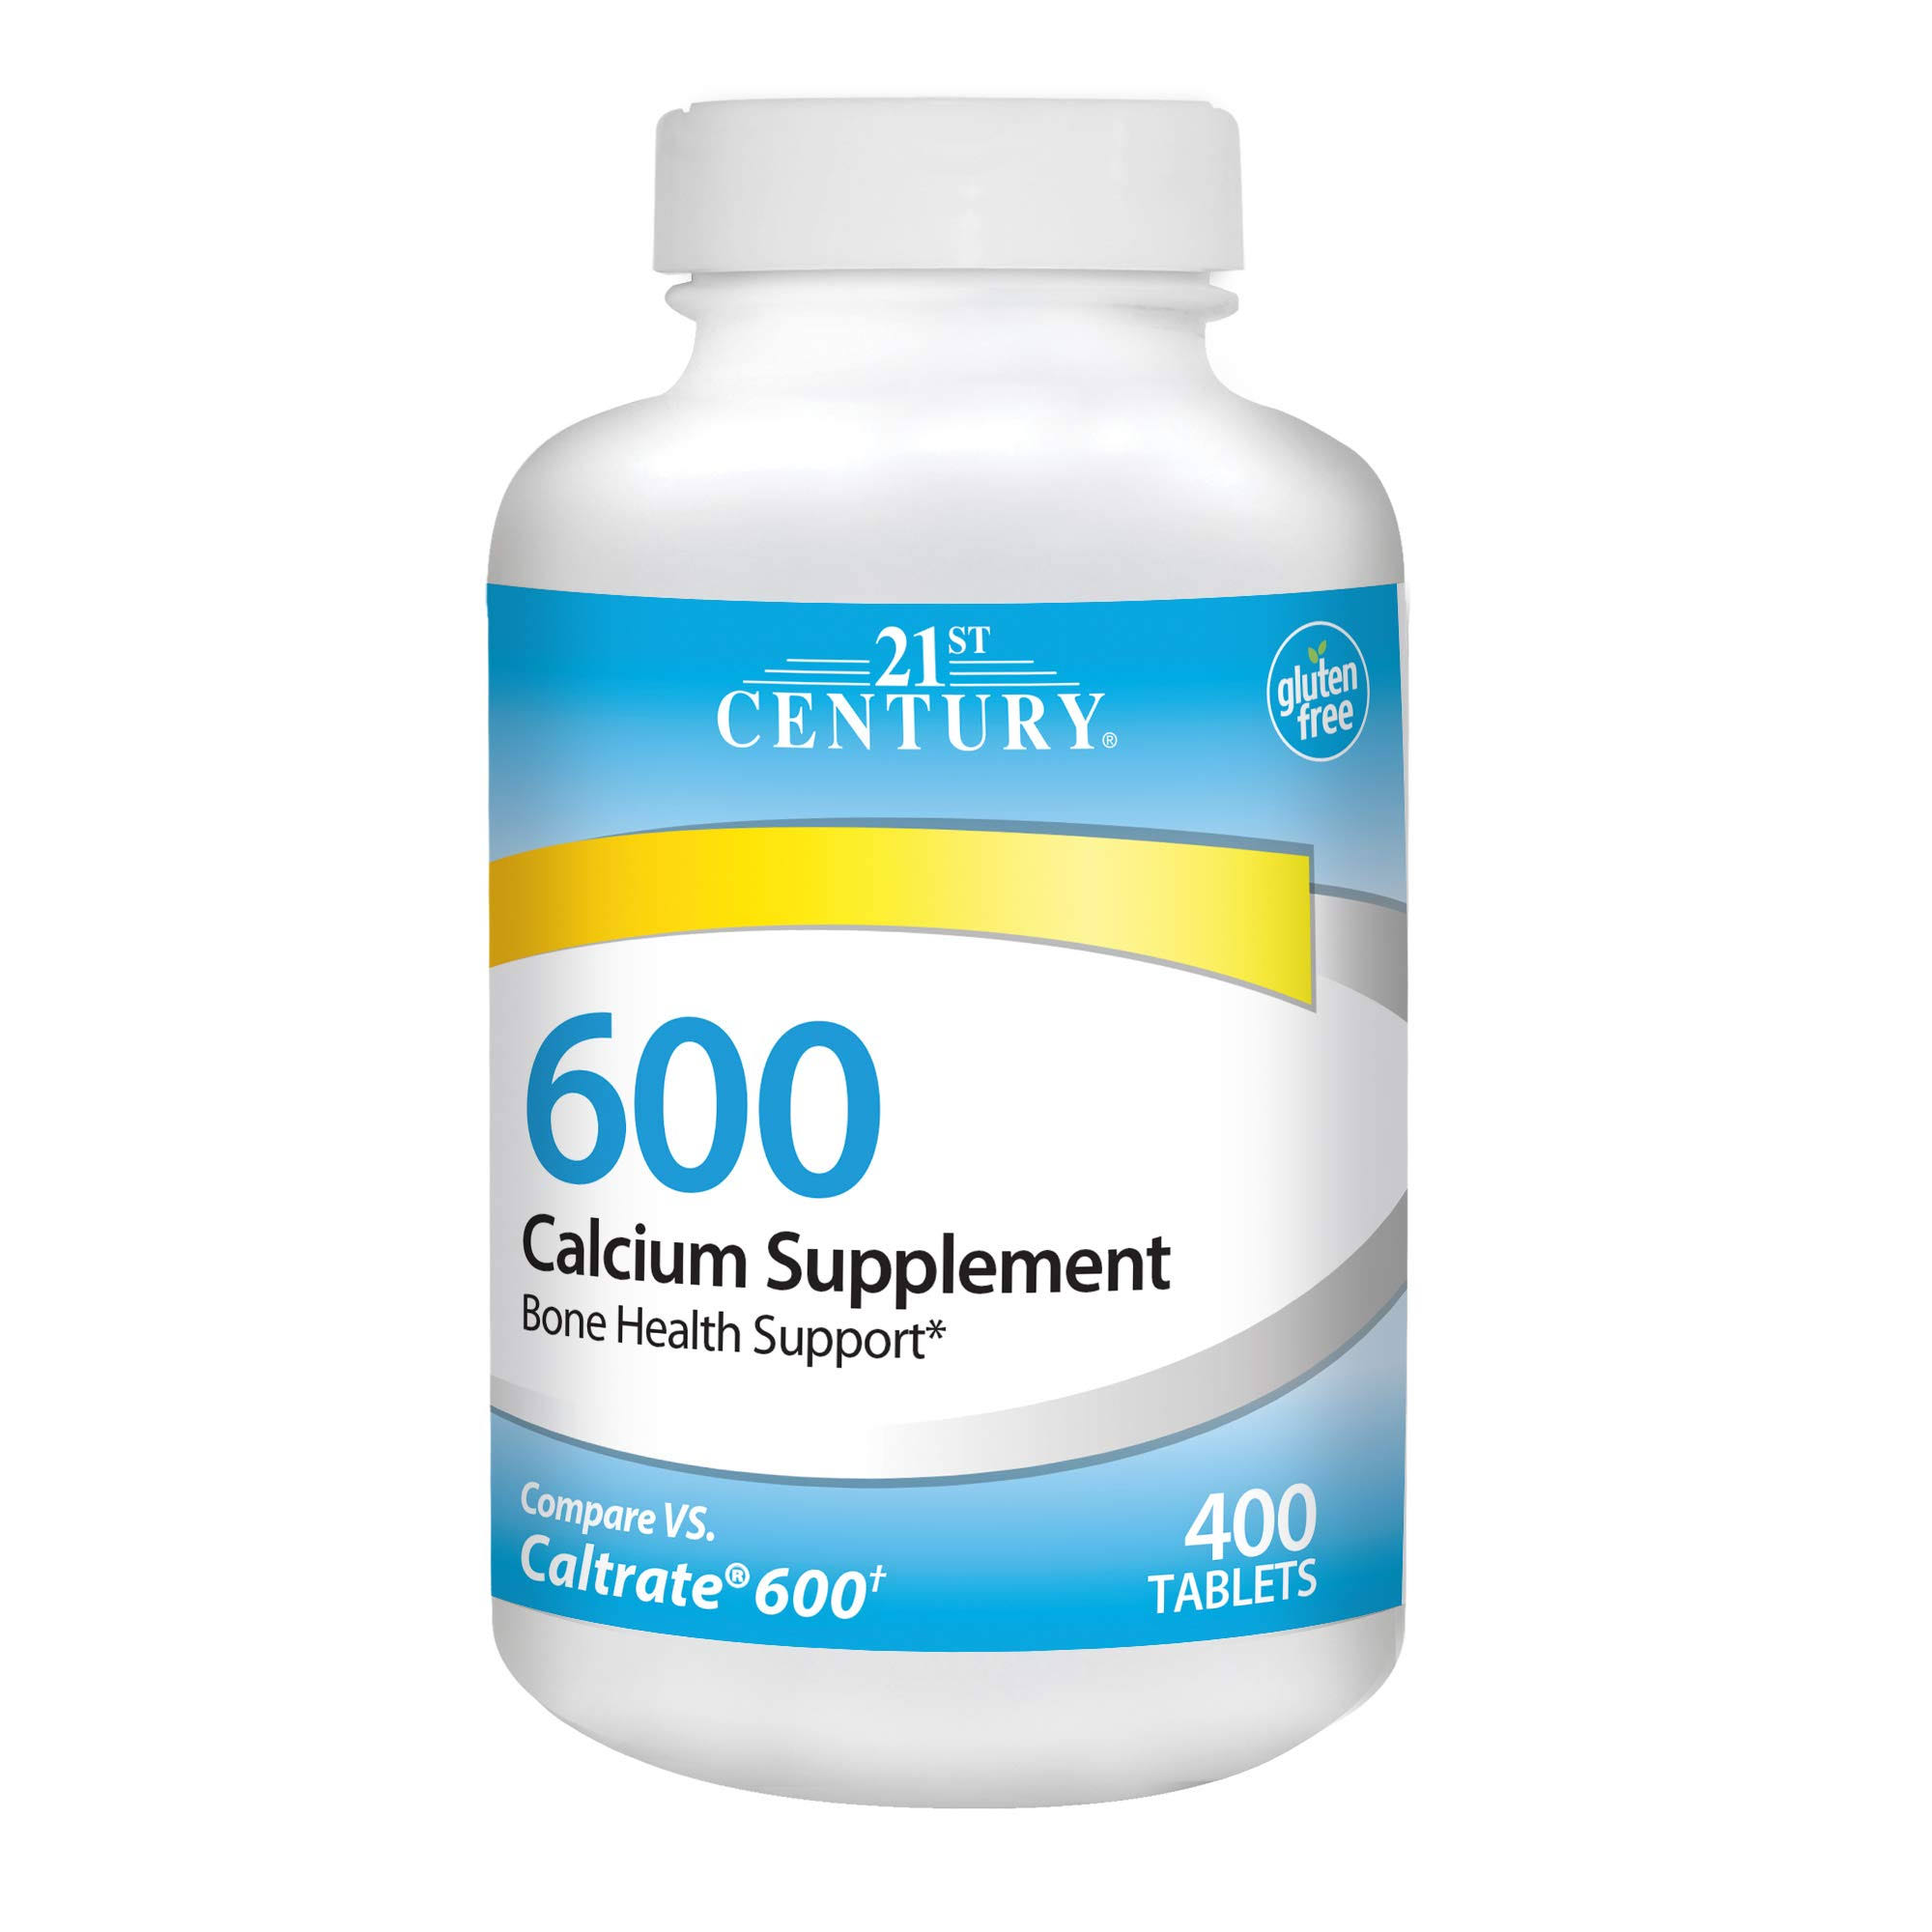 21st Century Calcium Supplement - 600mg, 400ct